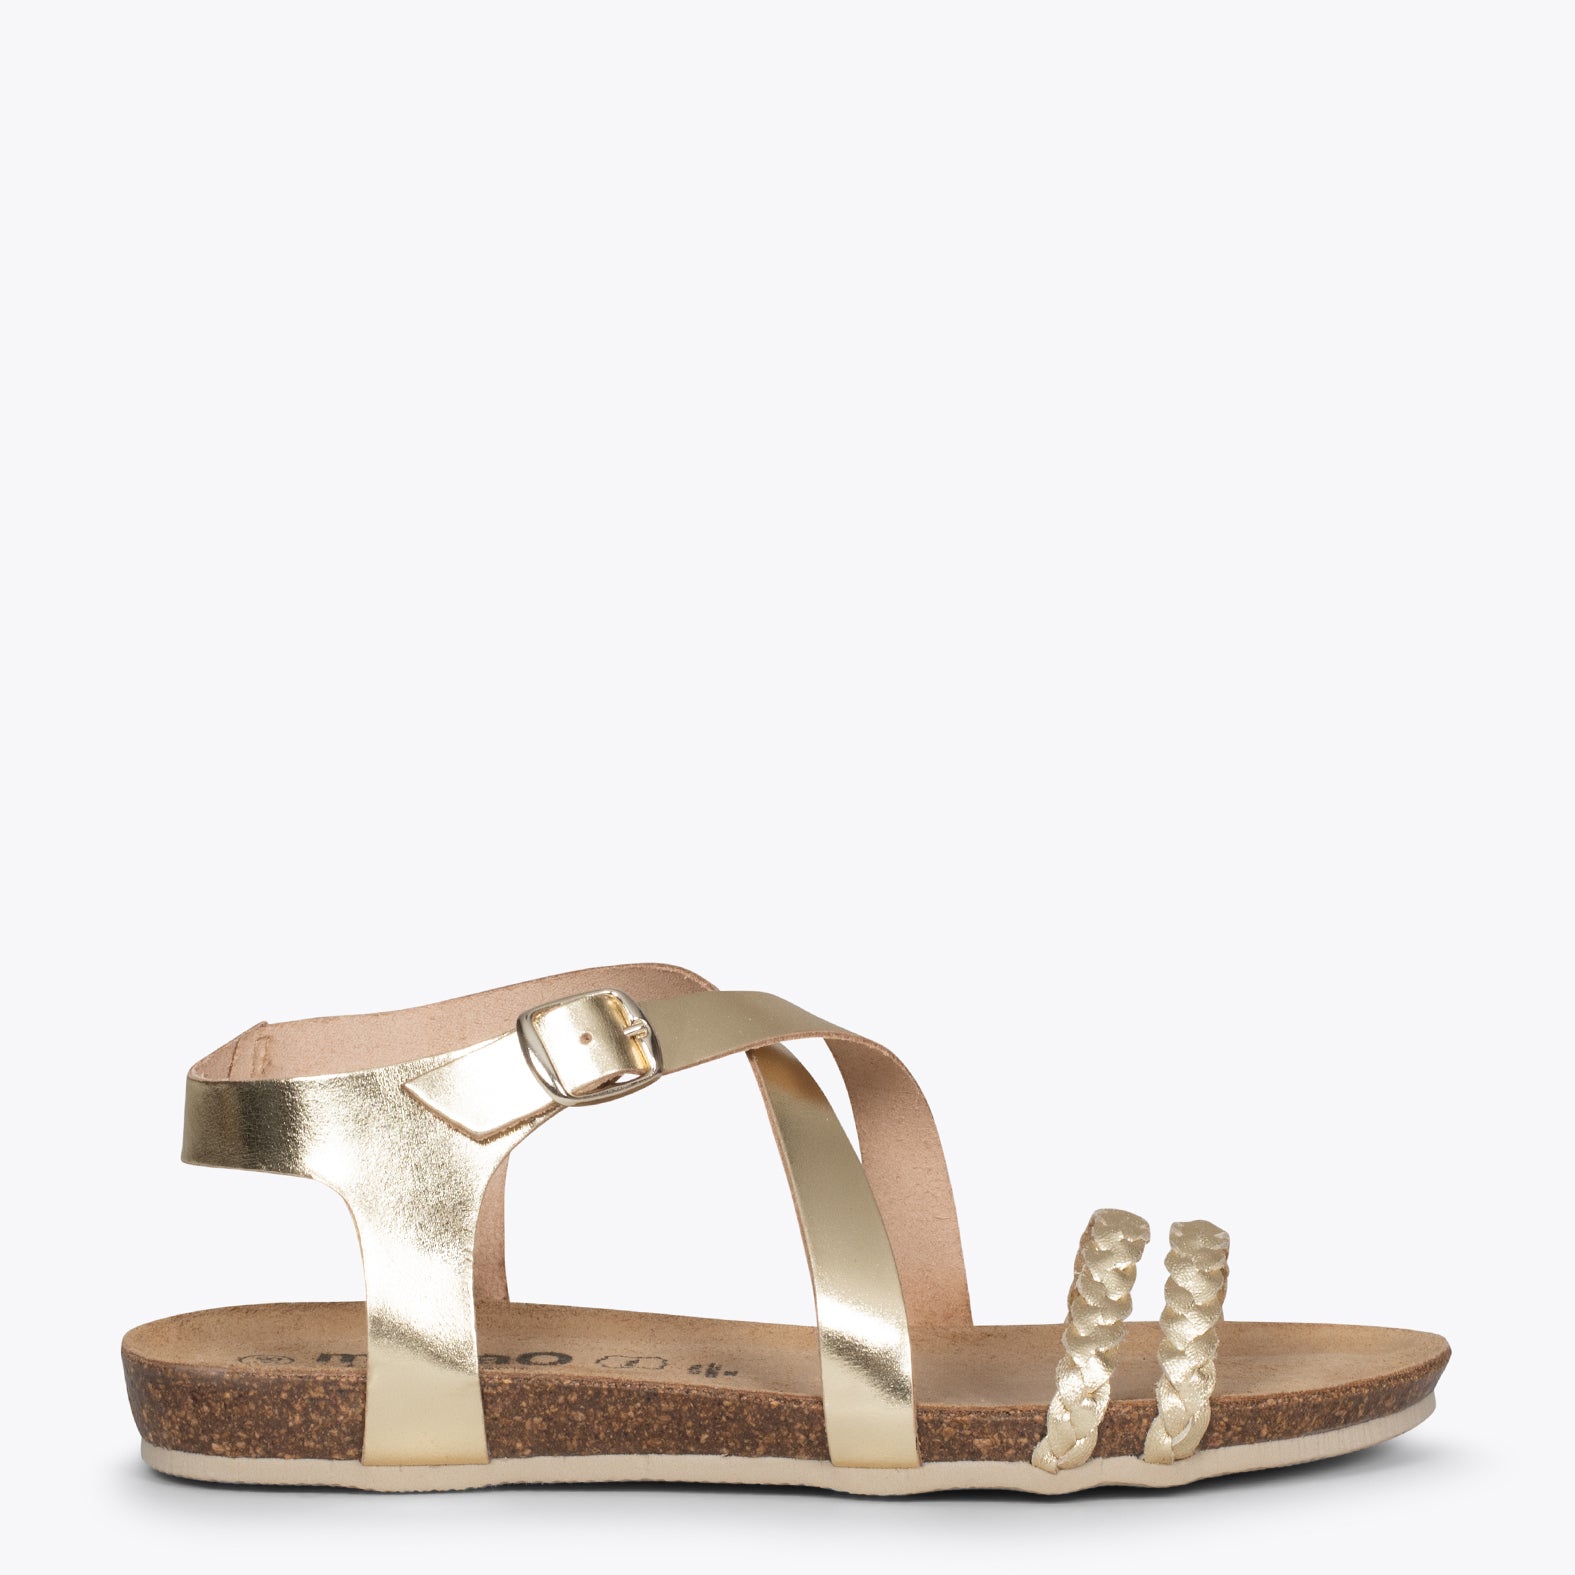 INDIE – GOLD BIO sandals with straps